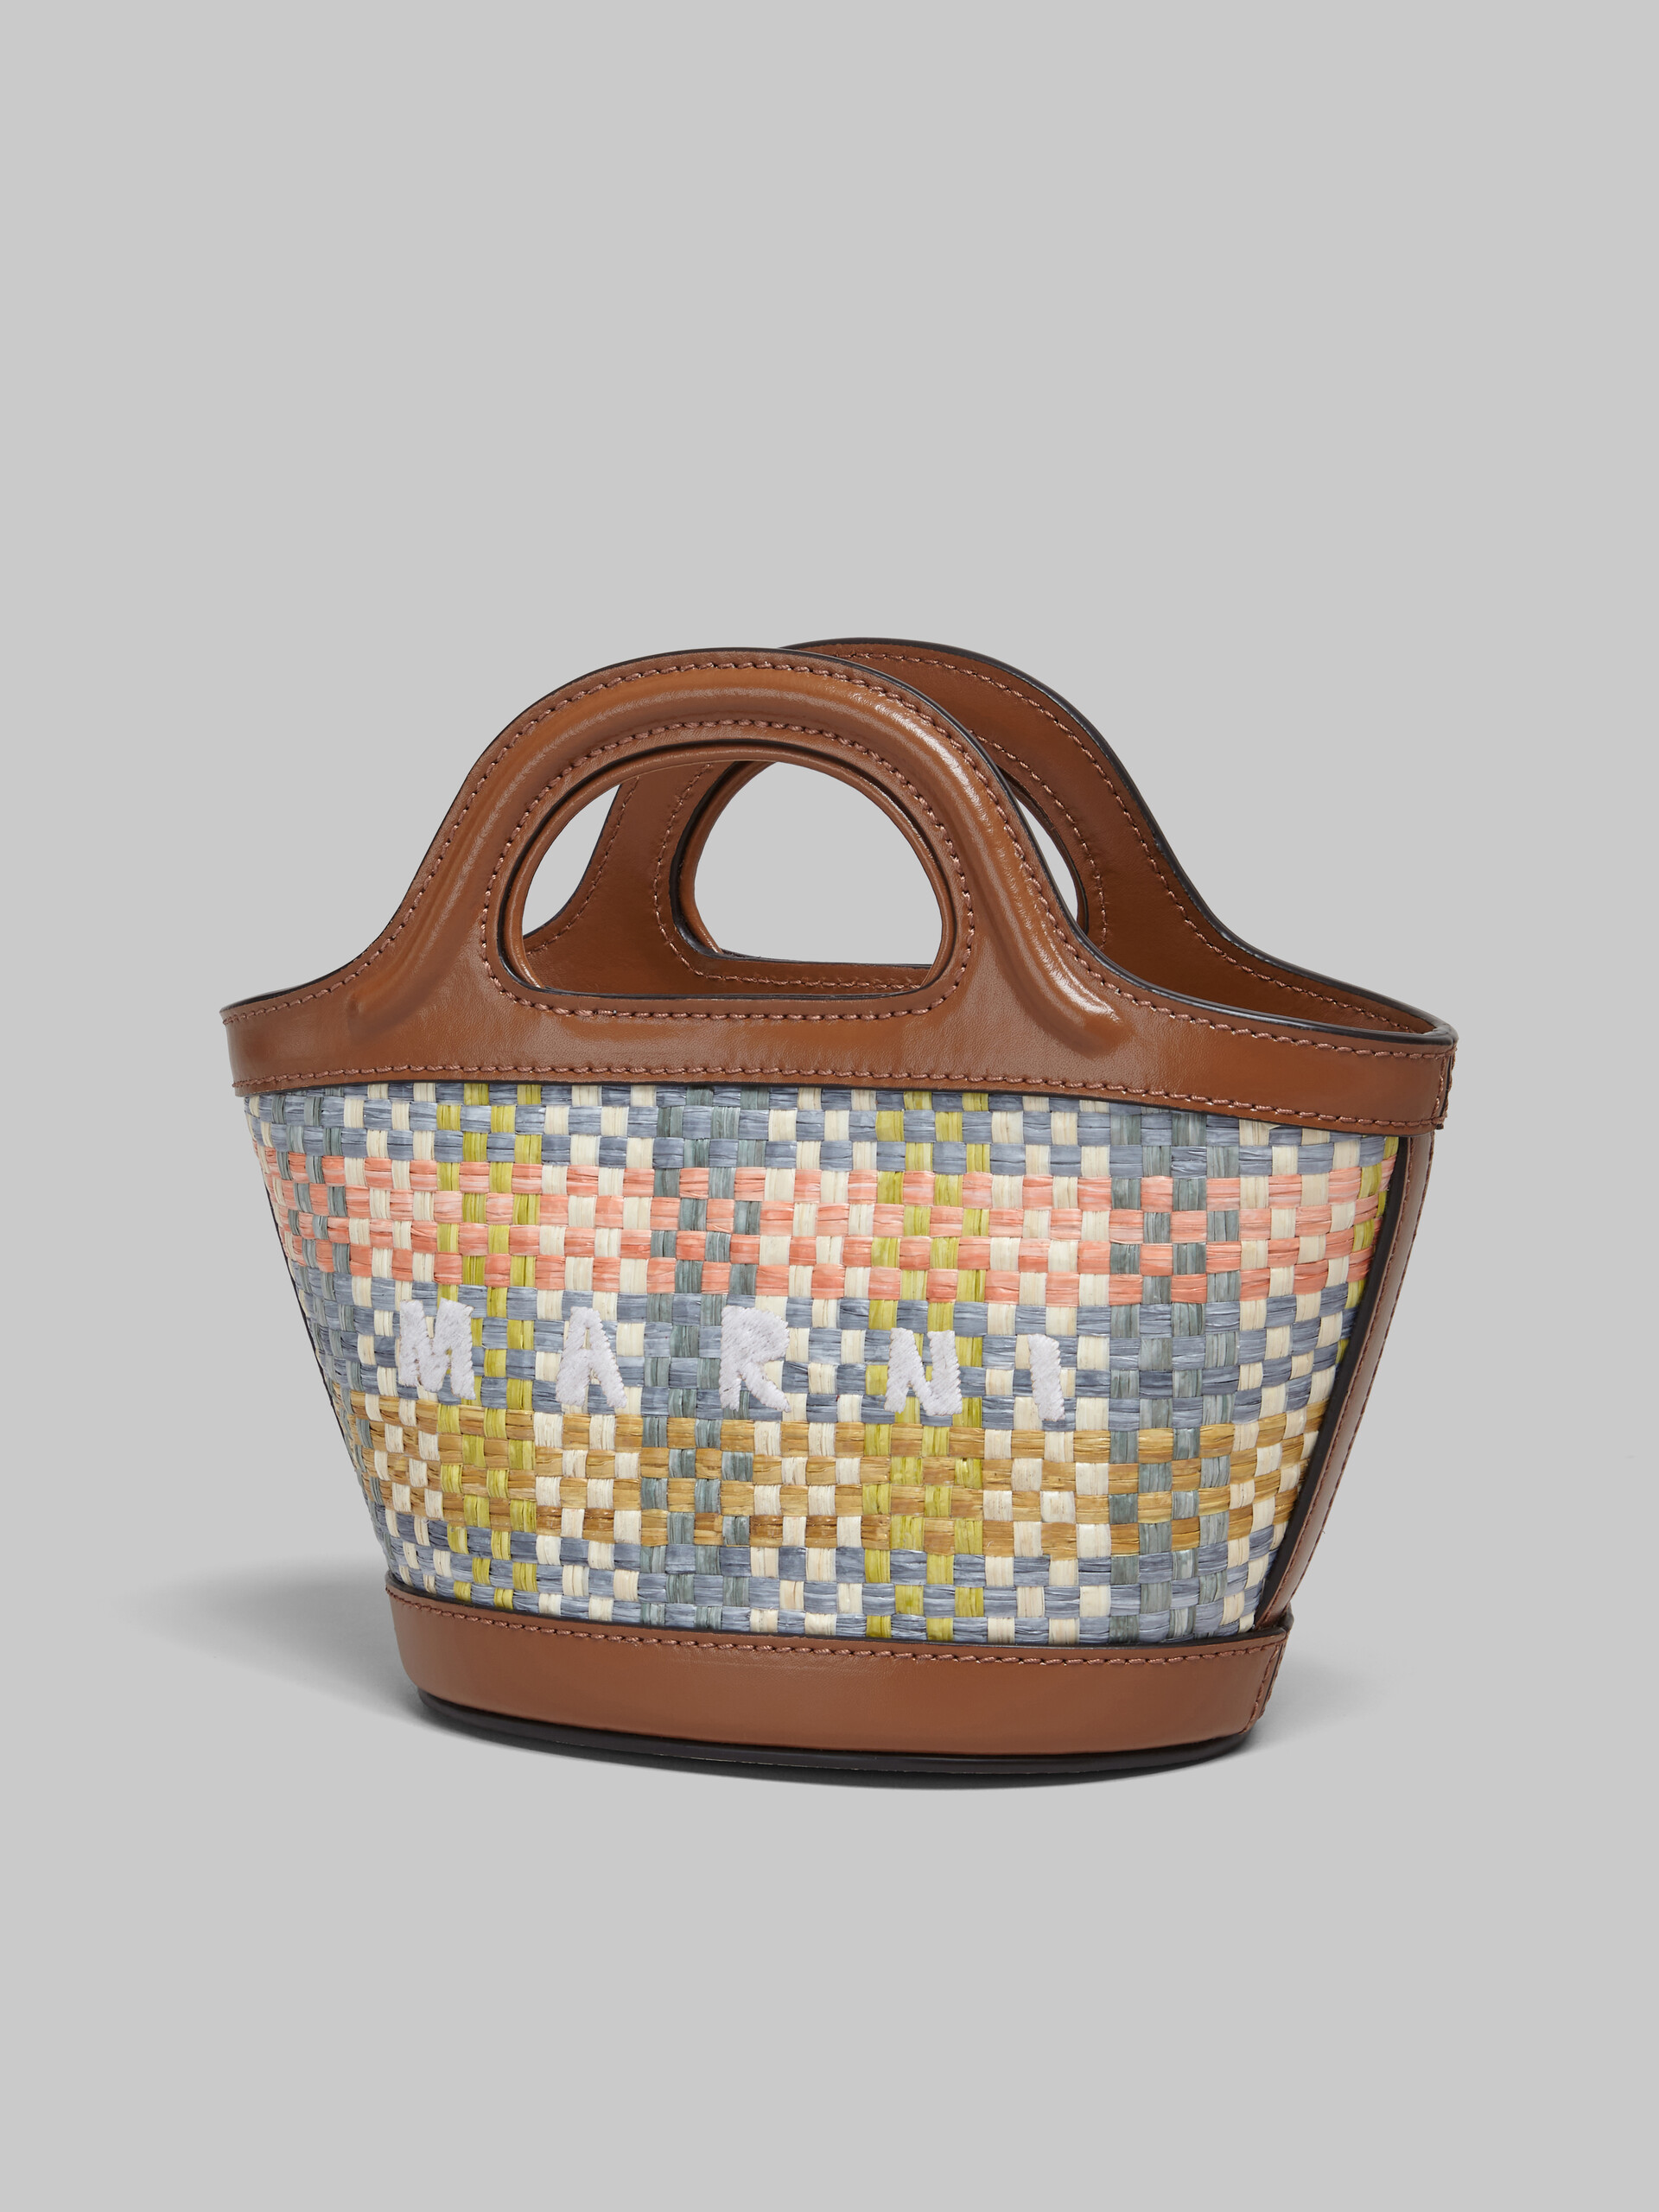 Brown leather and raffia-effect fabric Tropicalia Micro Bag - Handbag - Image 5